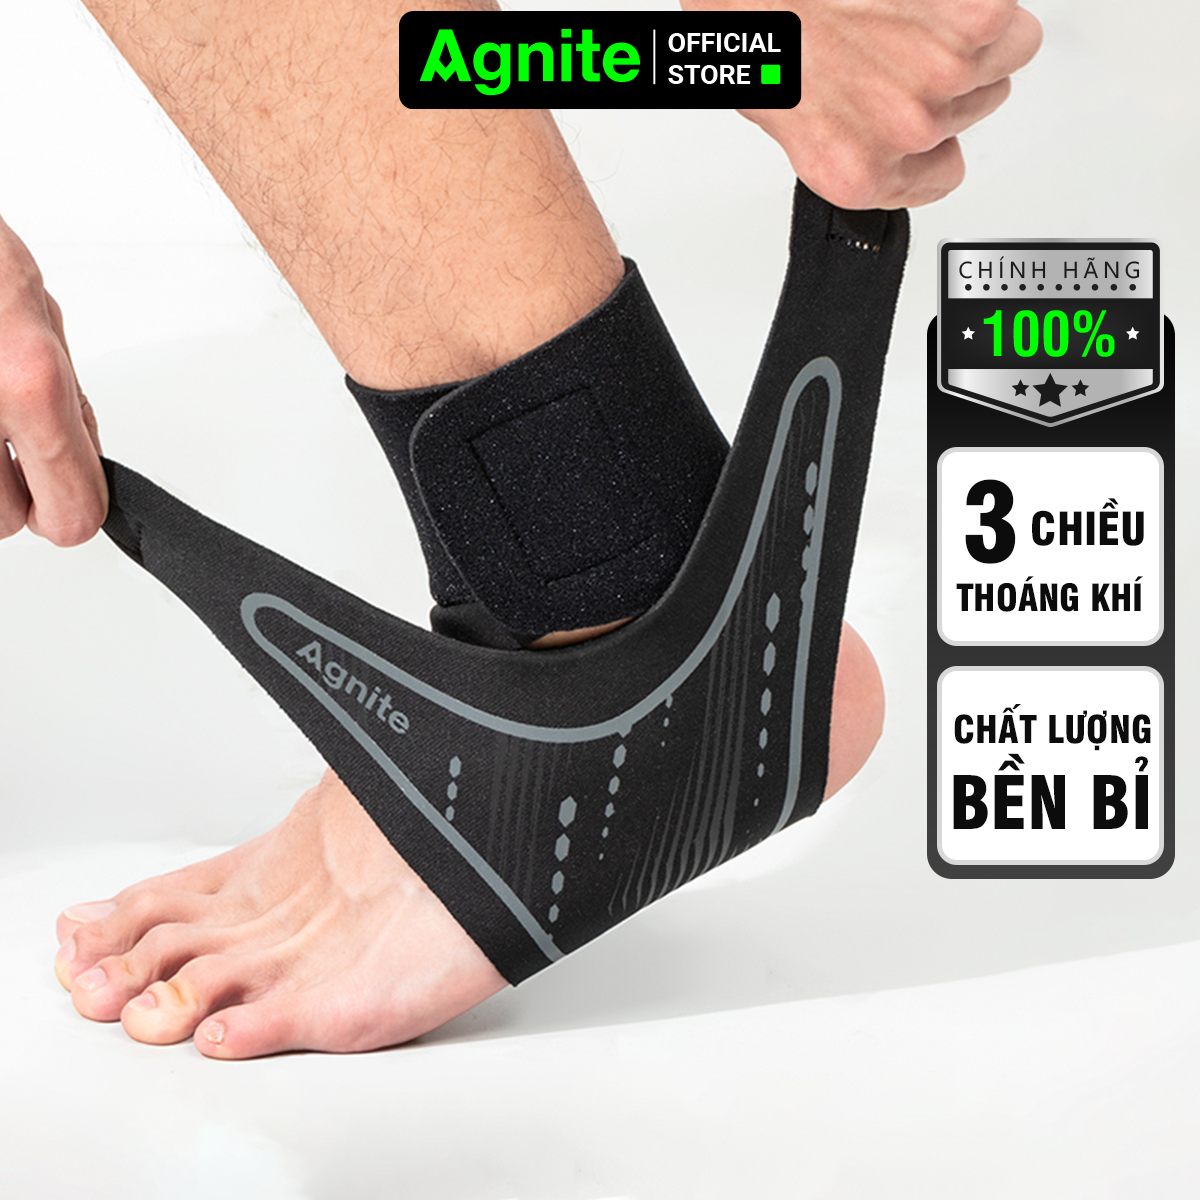 Hình ảnh [1 đôi] Đai cổ chân, băng quấn bảo vệ mắt cá chân Agnite chính hãng, cao cấp, thích hợp sử dụng nhiều môn thể thao